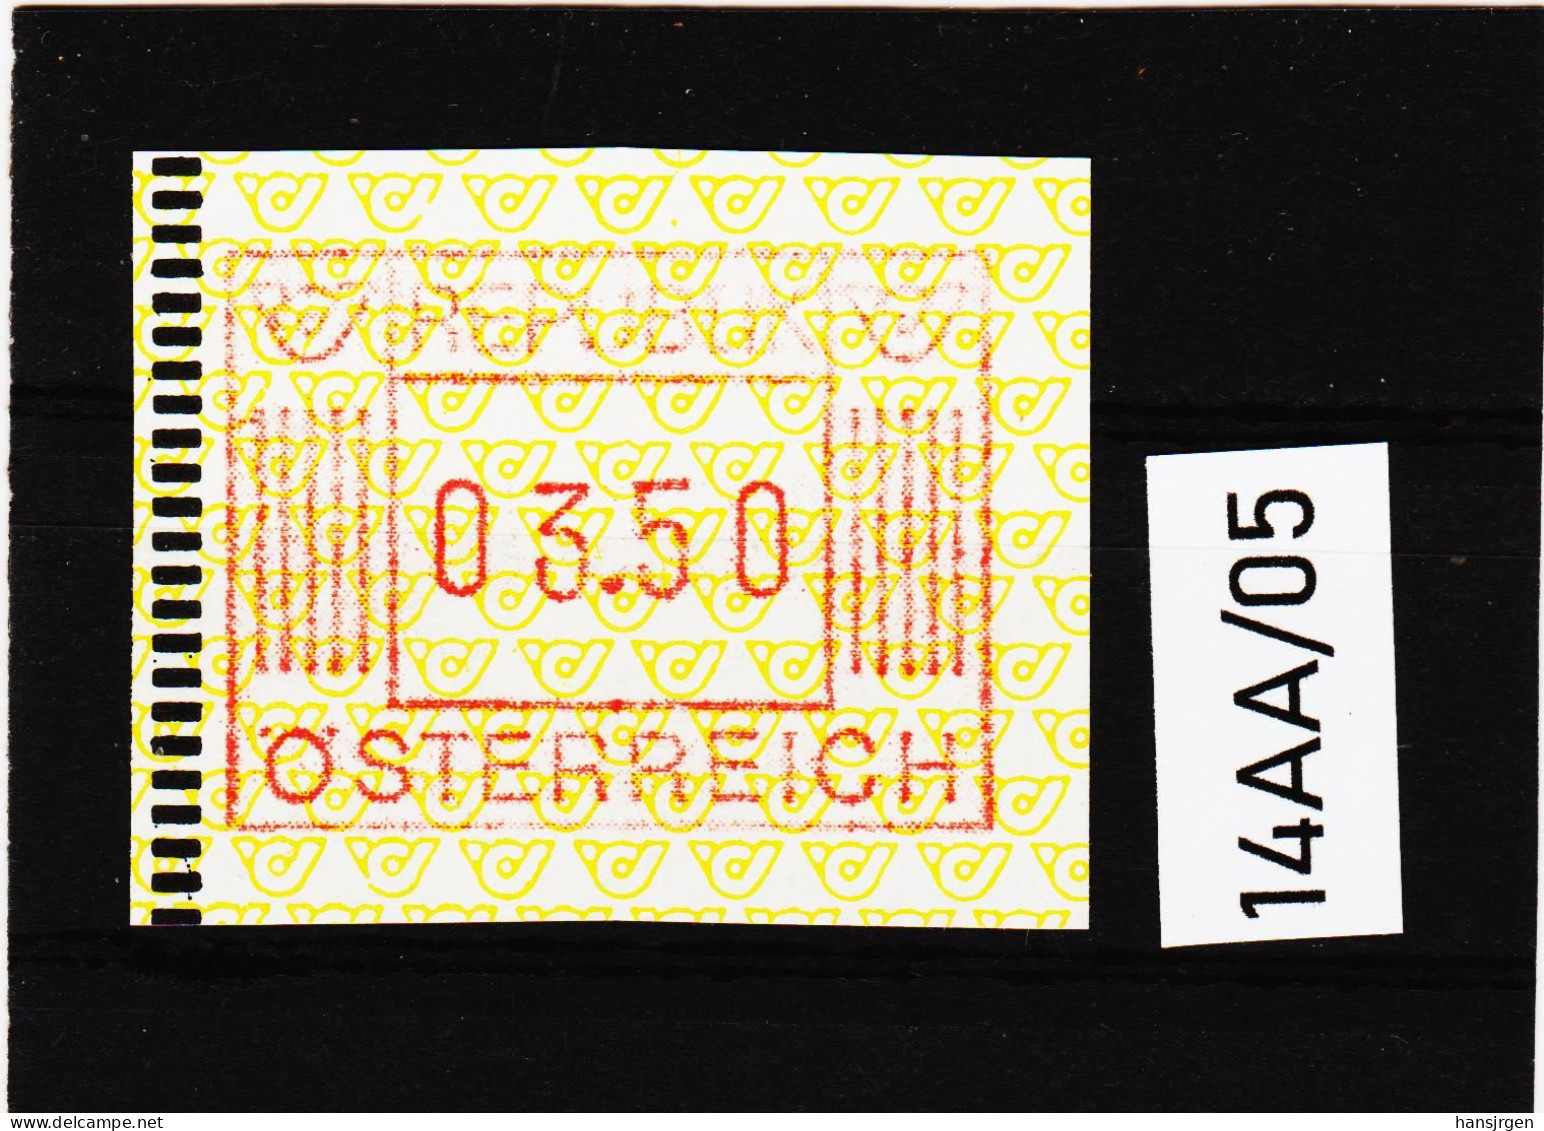 14AA/05 ÖSTERREICH 1983 AUTOMATENMARKEN 1. AUSGABE  3,50 Schilling   ** Postfrisch - Automatenmarken [ATM]